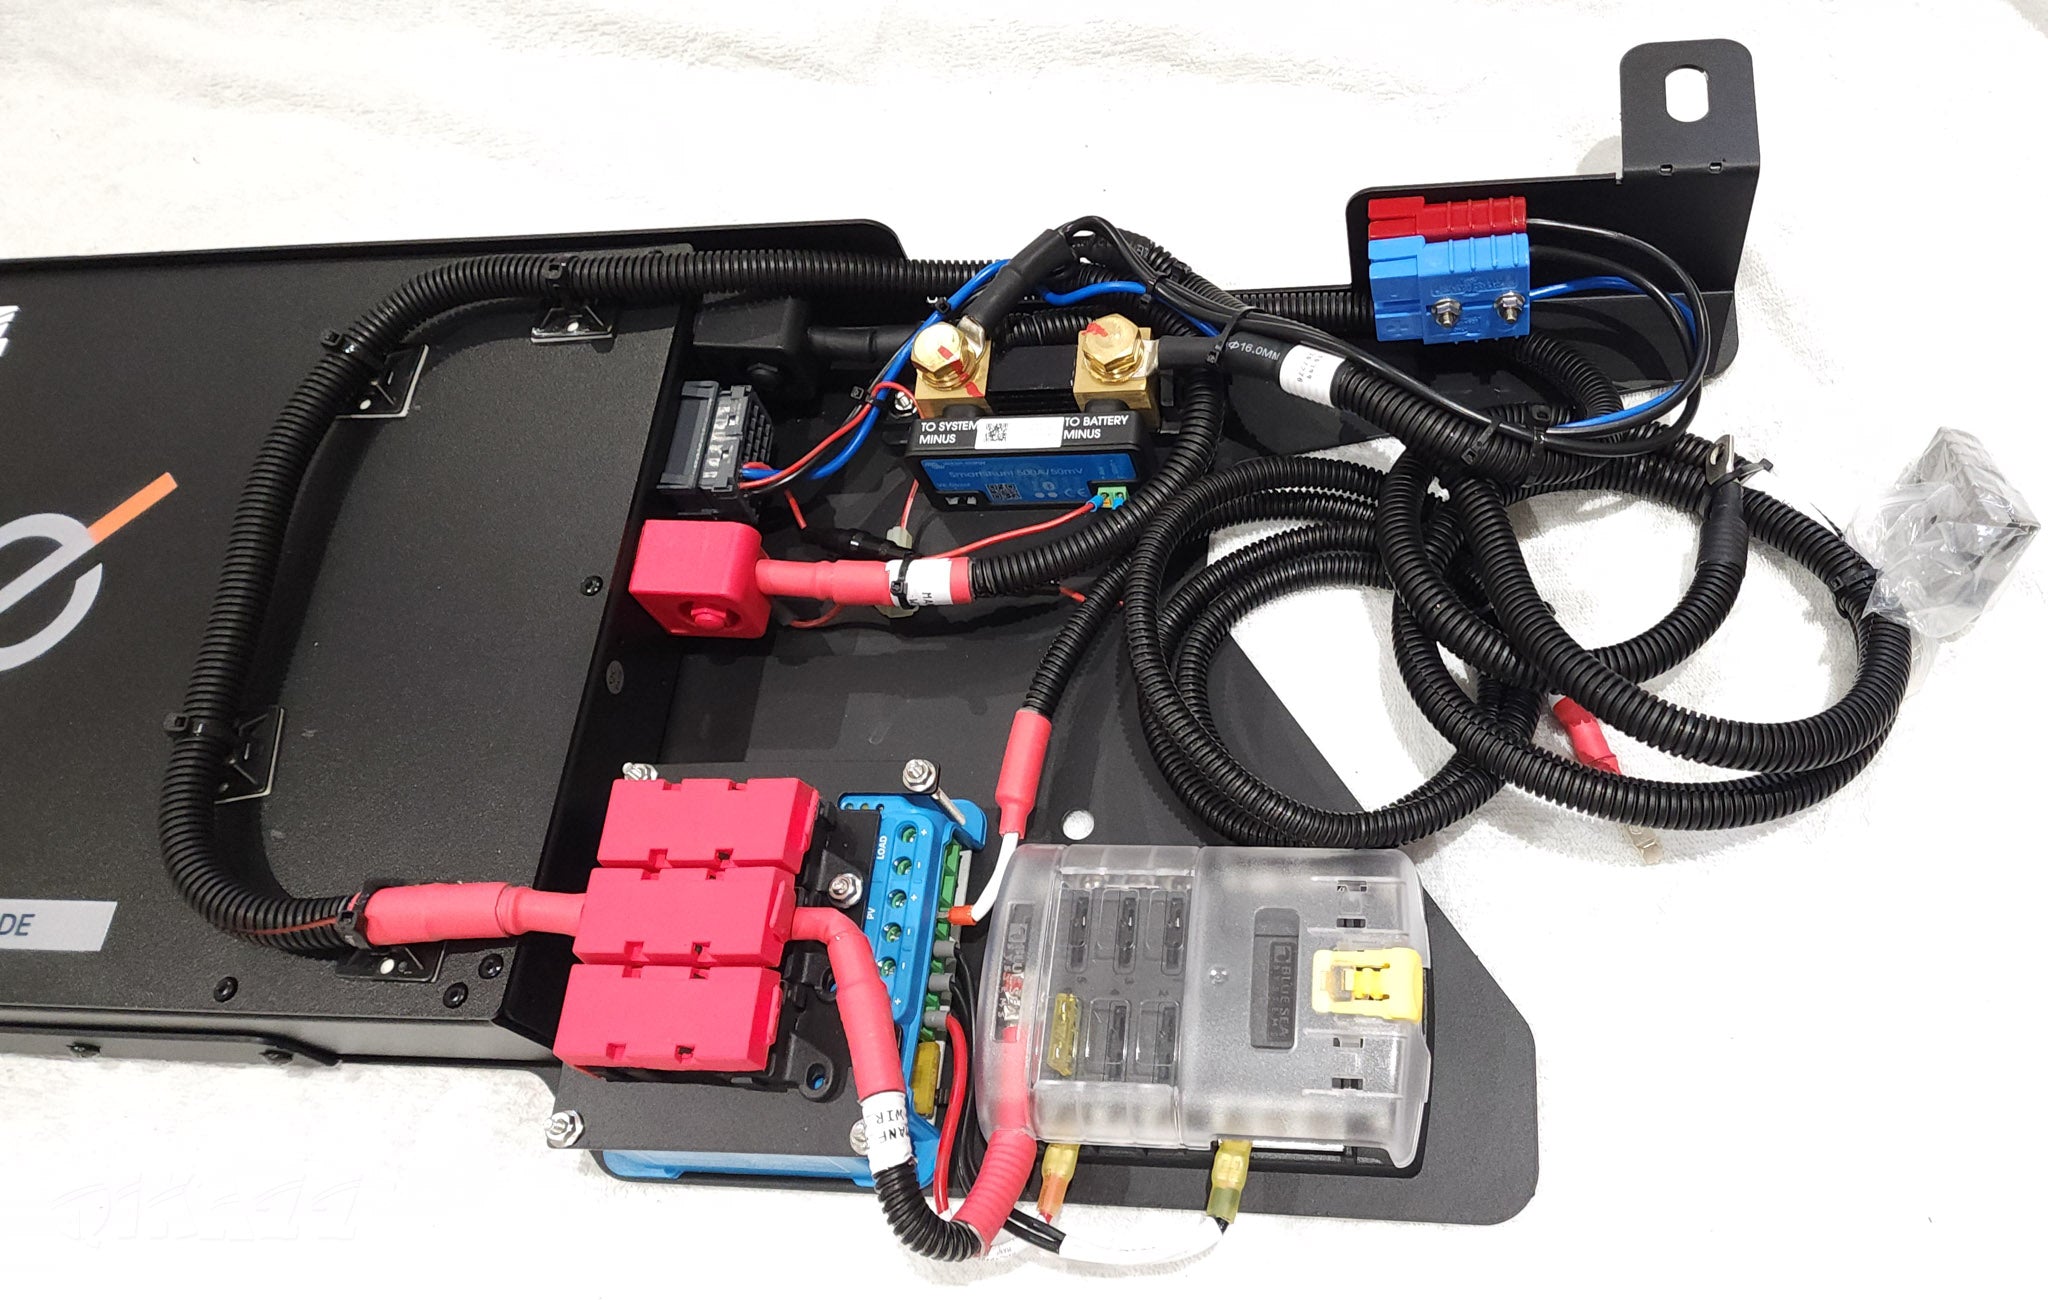 Cangoee 110AH Lithium Dual Battery DIY Kit for Nissan Patrol Y62 Under Rear Floor | Cangoee